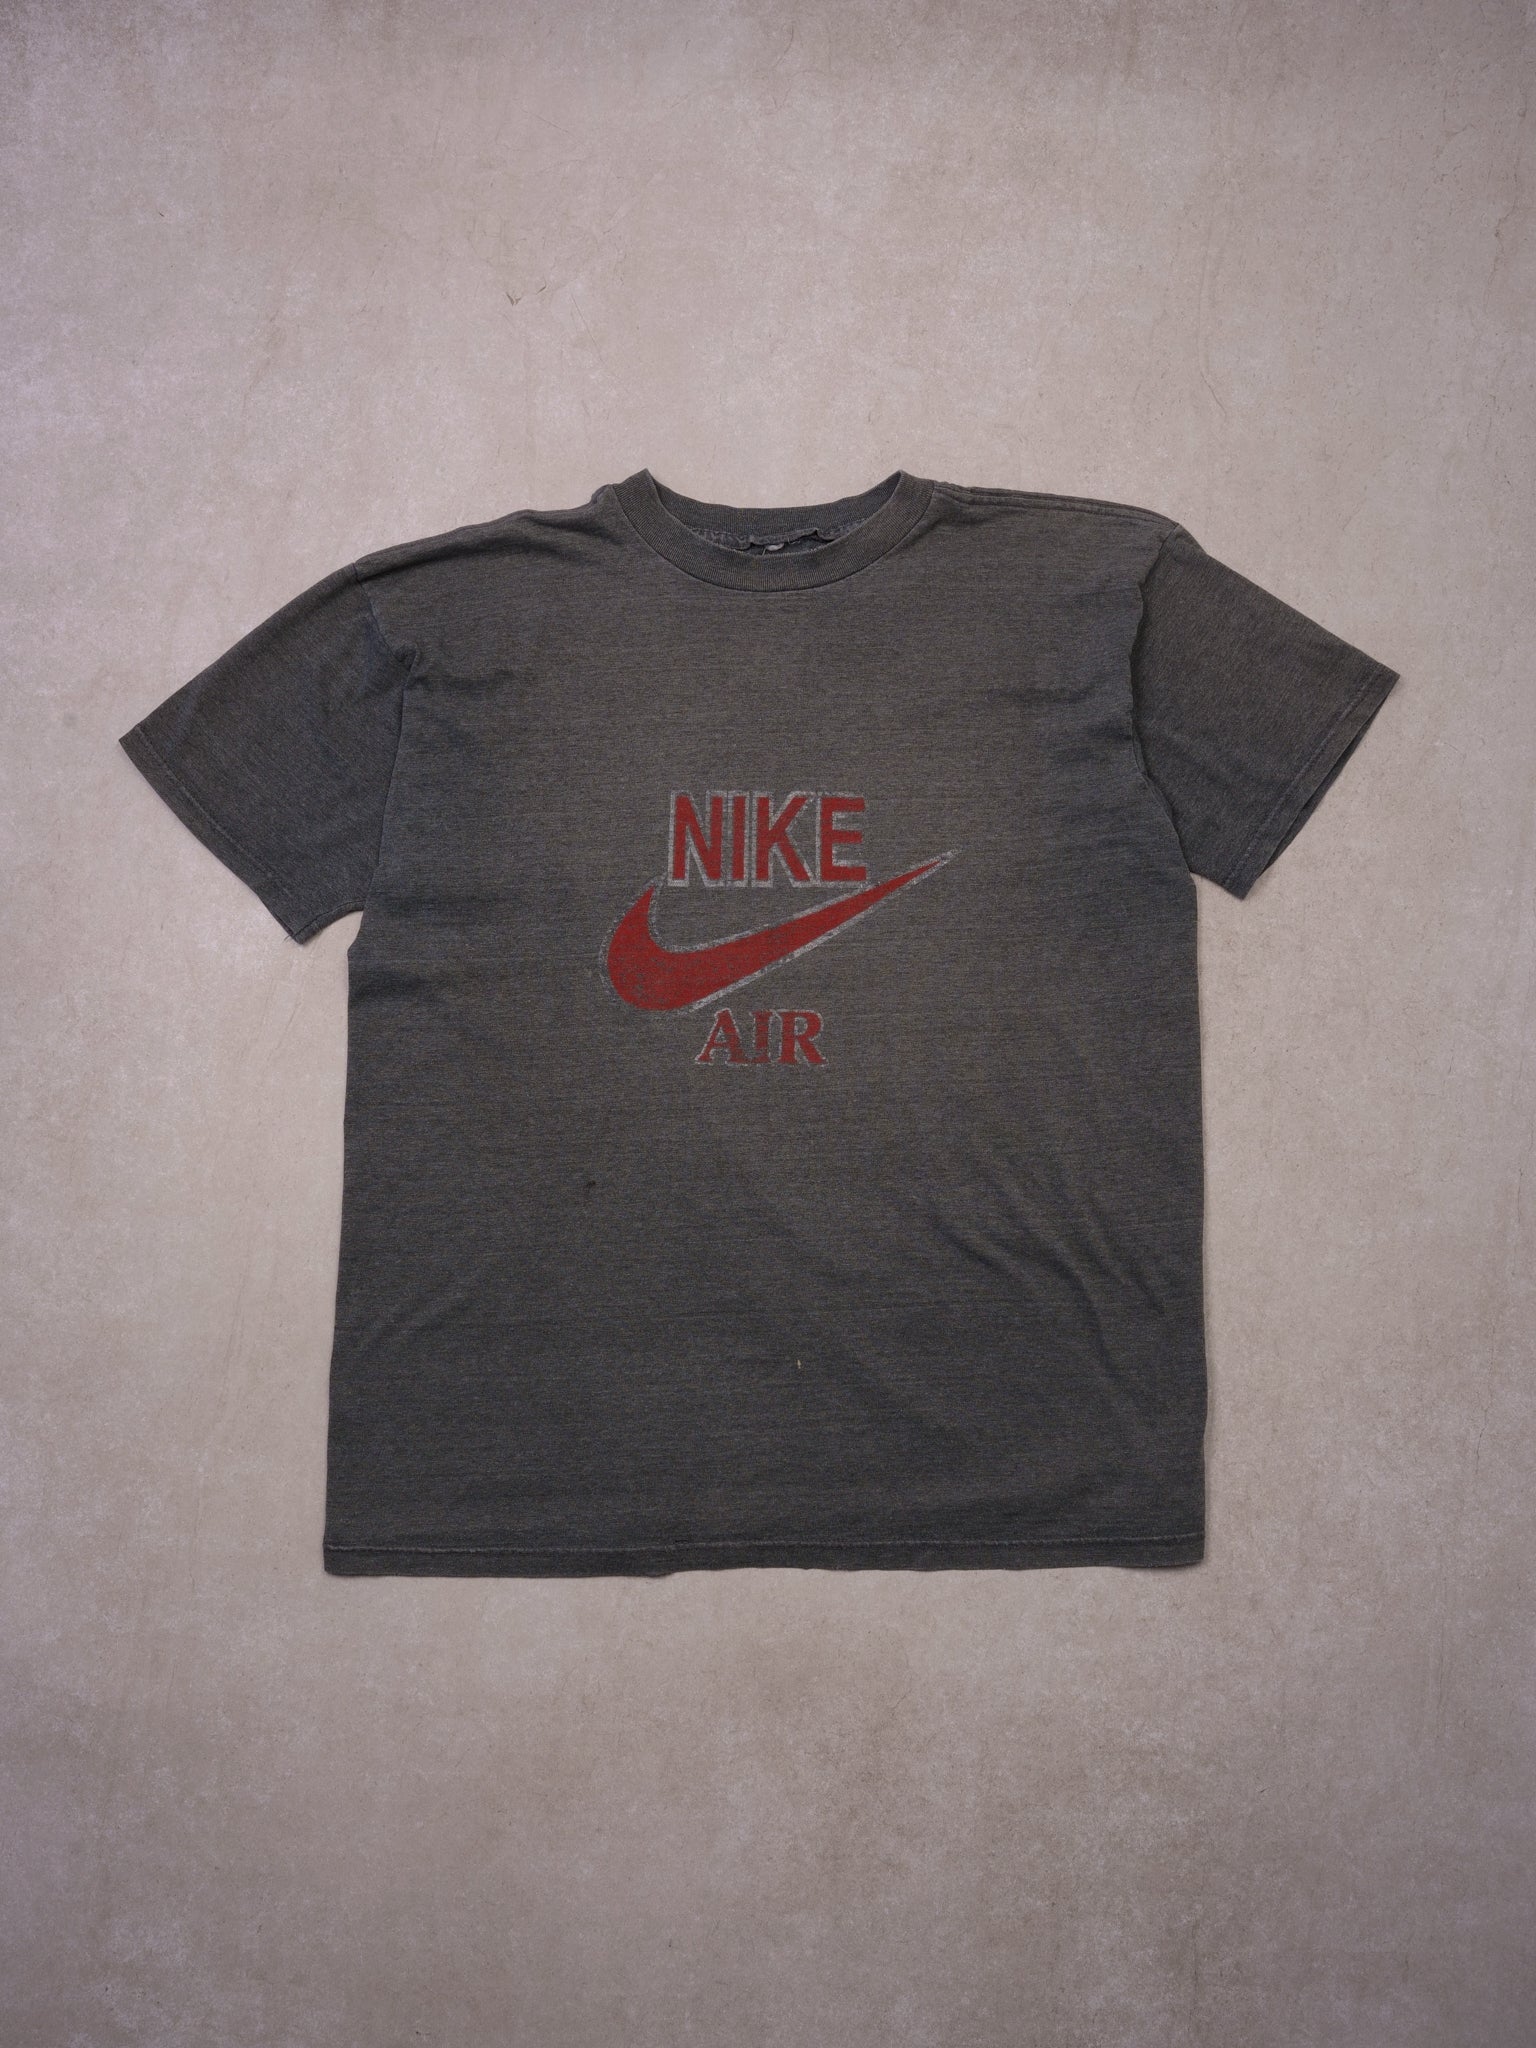 Vintage 80s Dark Grey Nike Air Bootleg Graphic Tee (M)